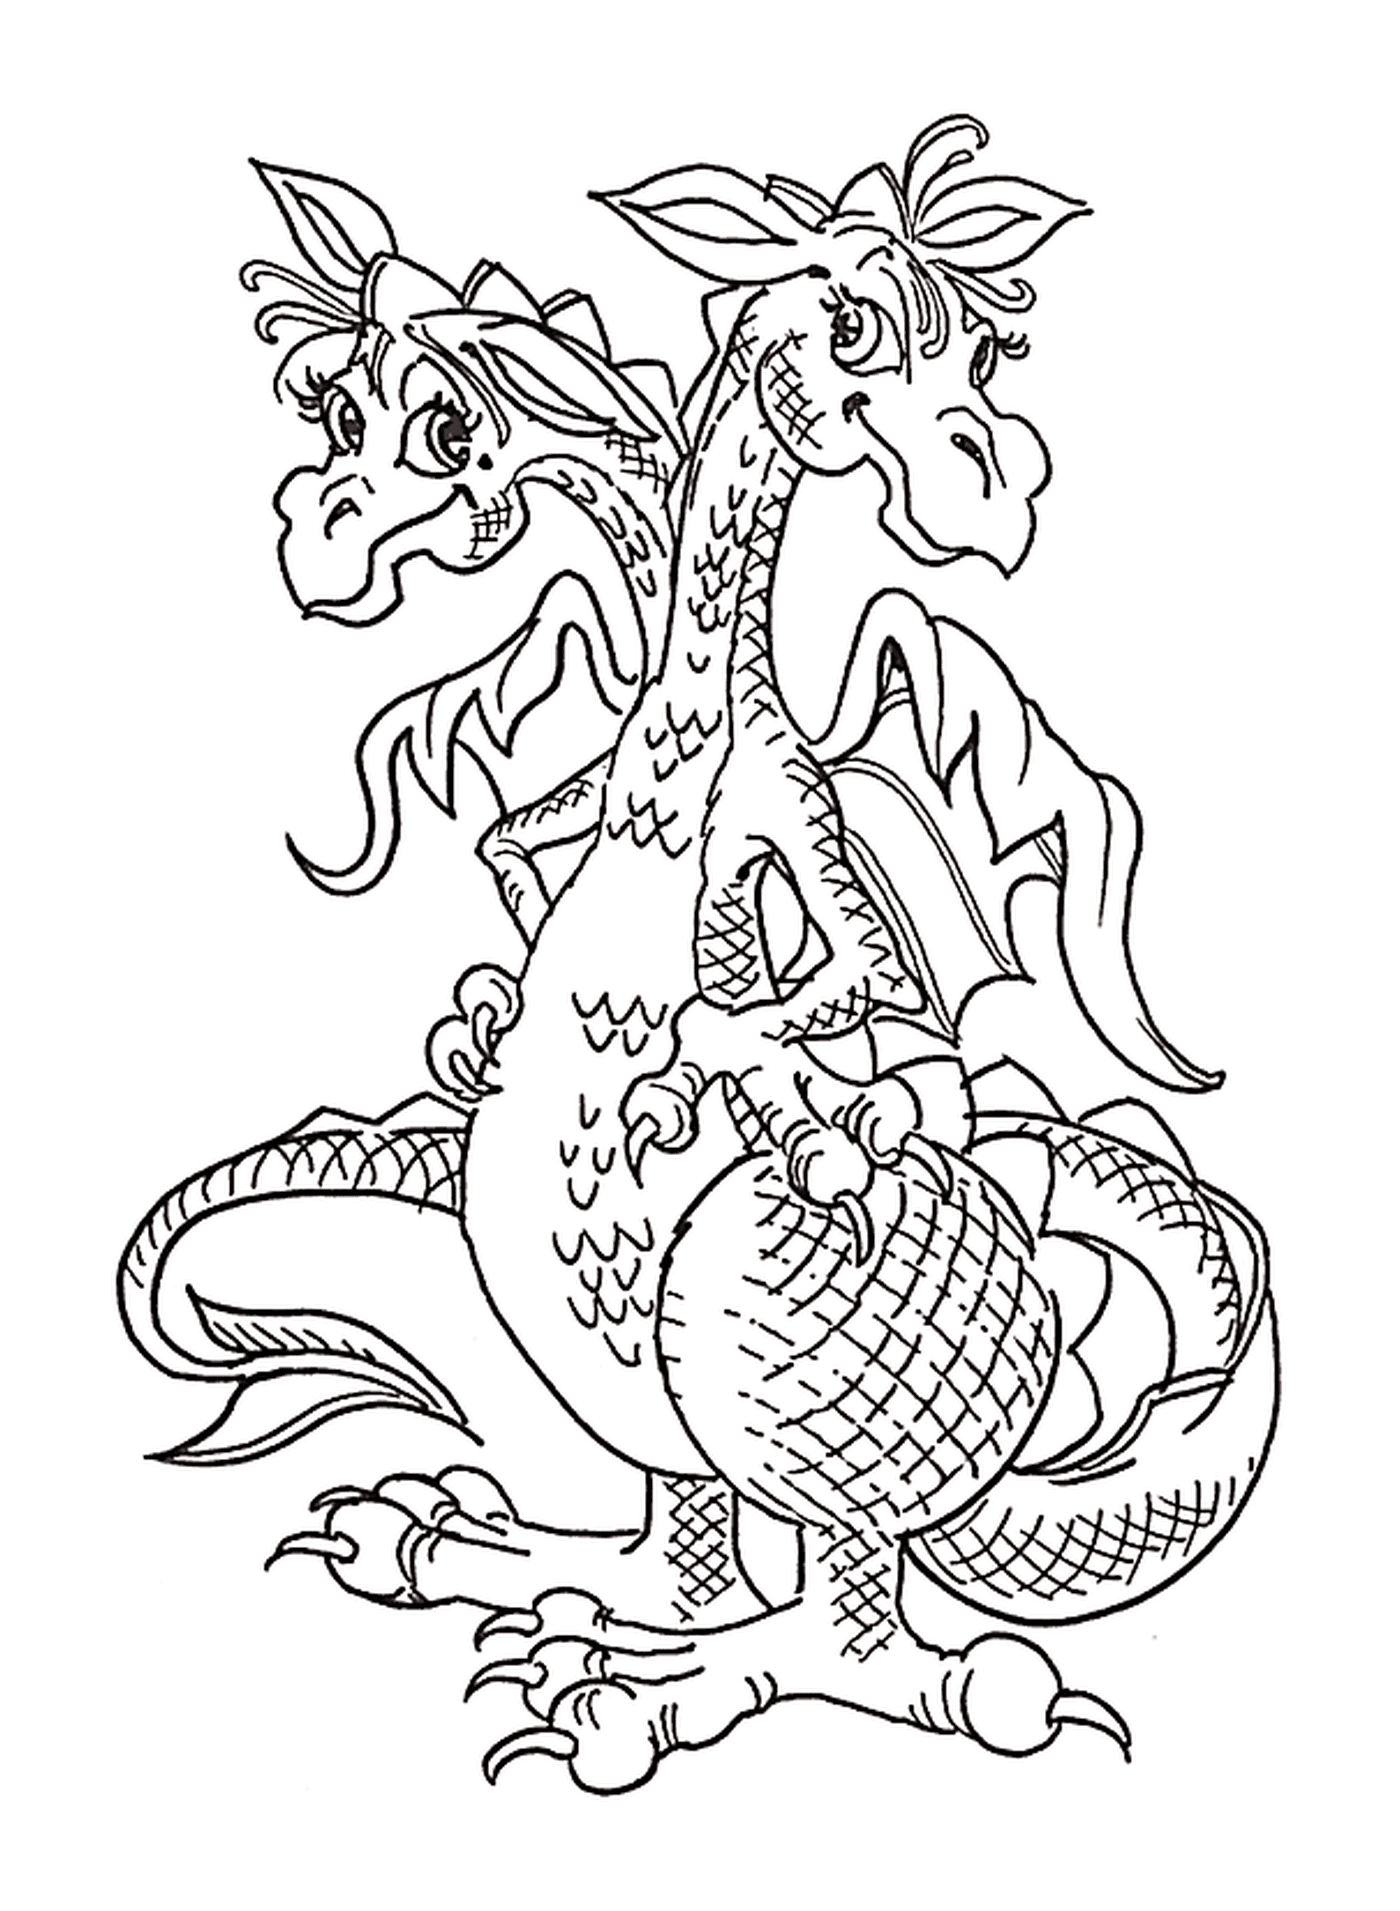  Un dragón con dos cabezas 